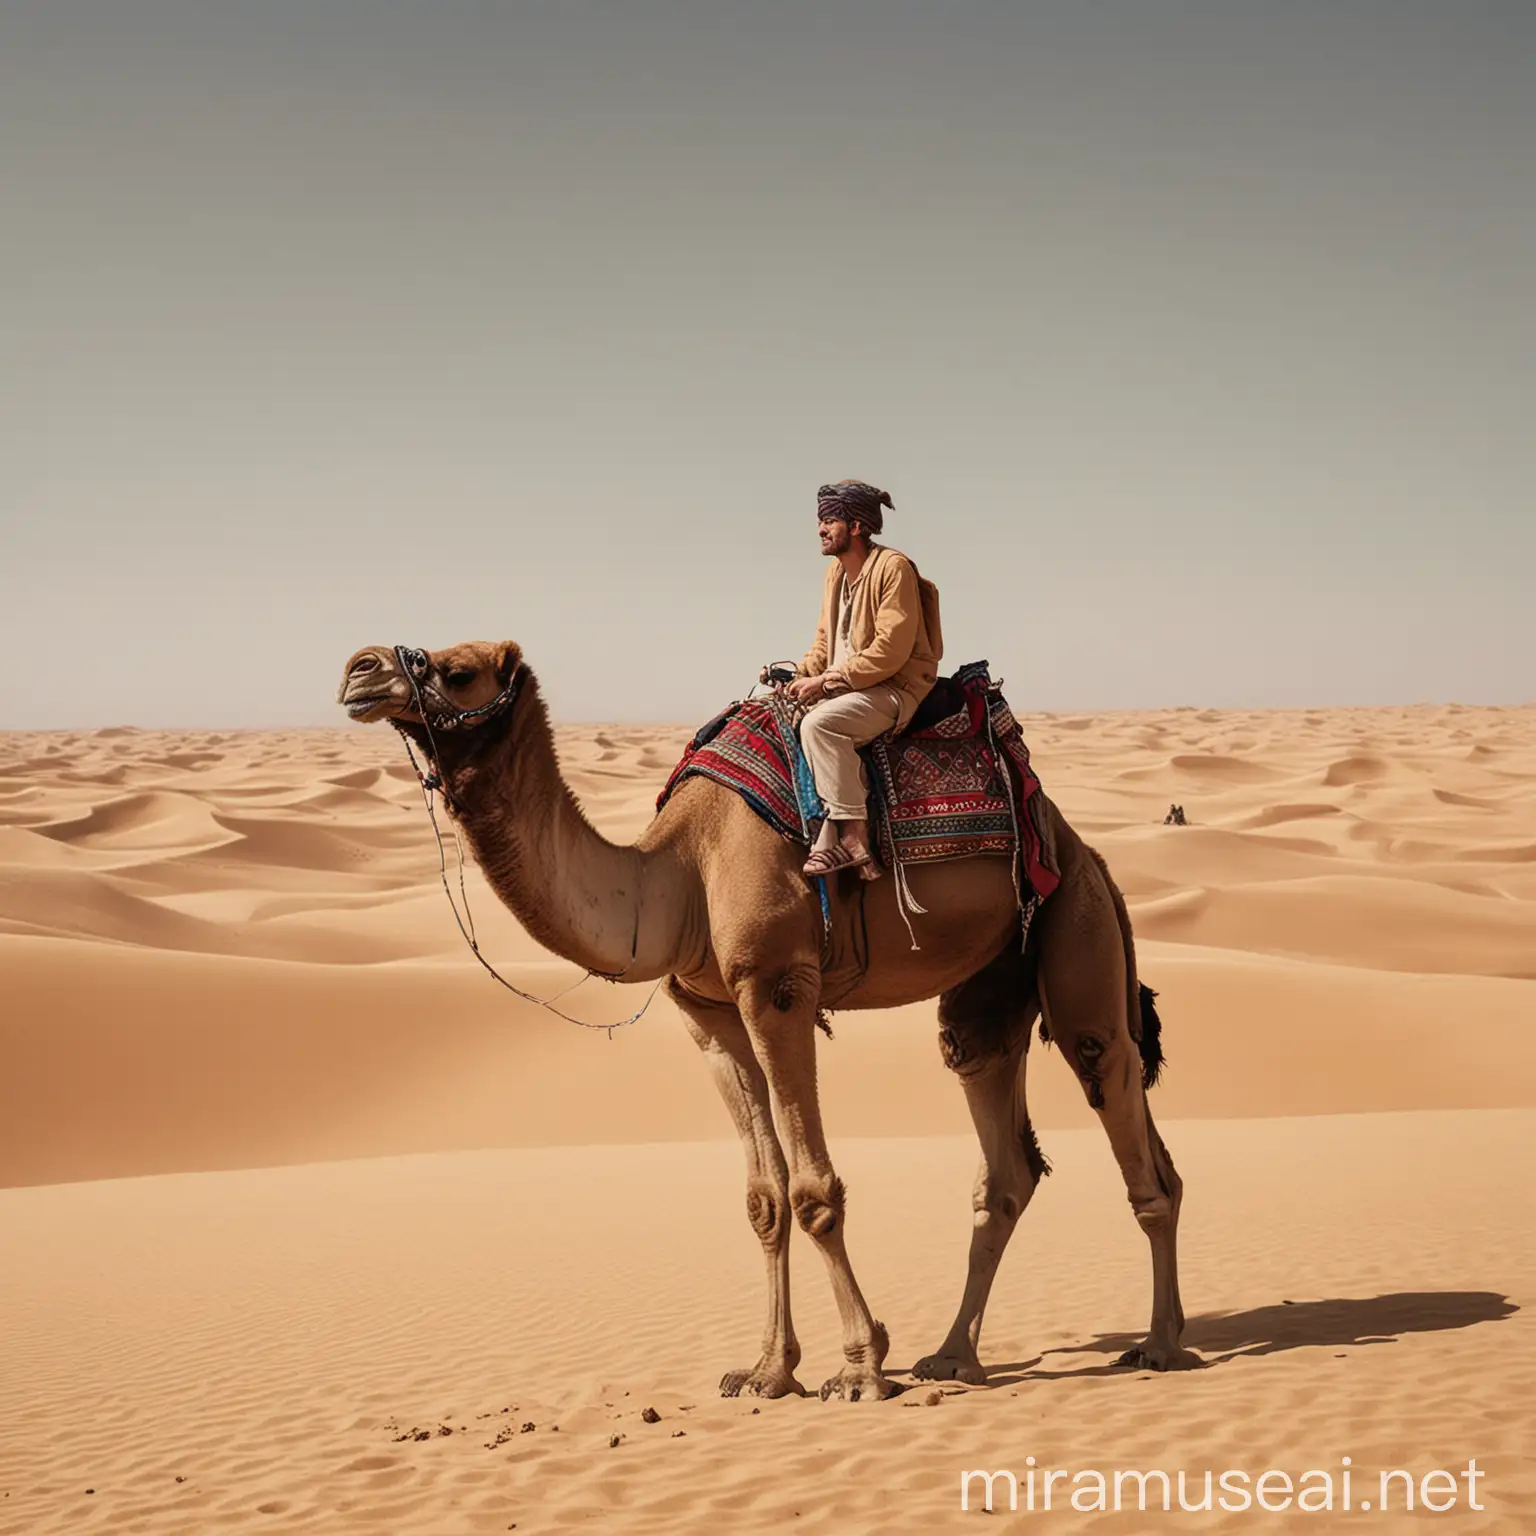 Английский читатель в поисках, на верблюде в пустыне